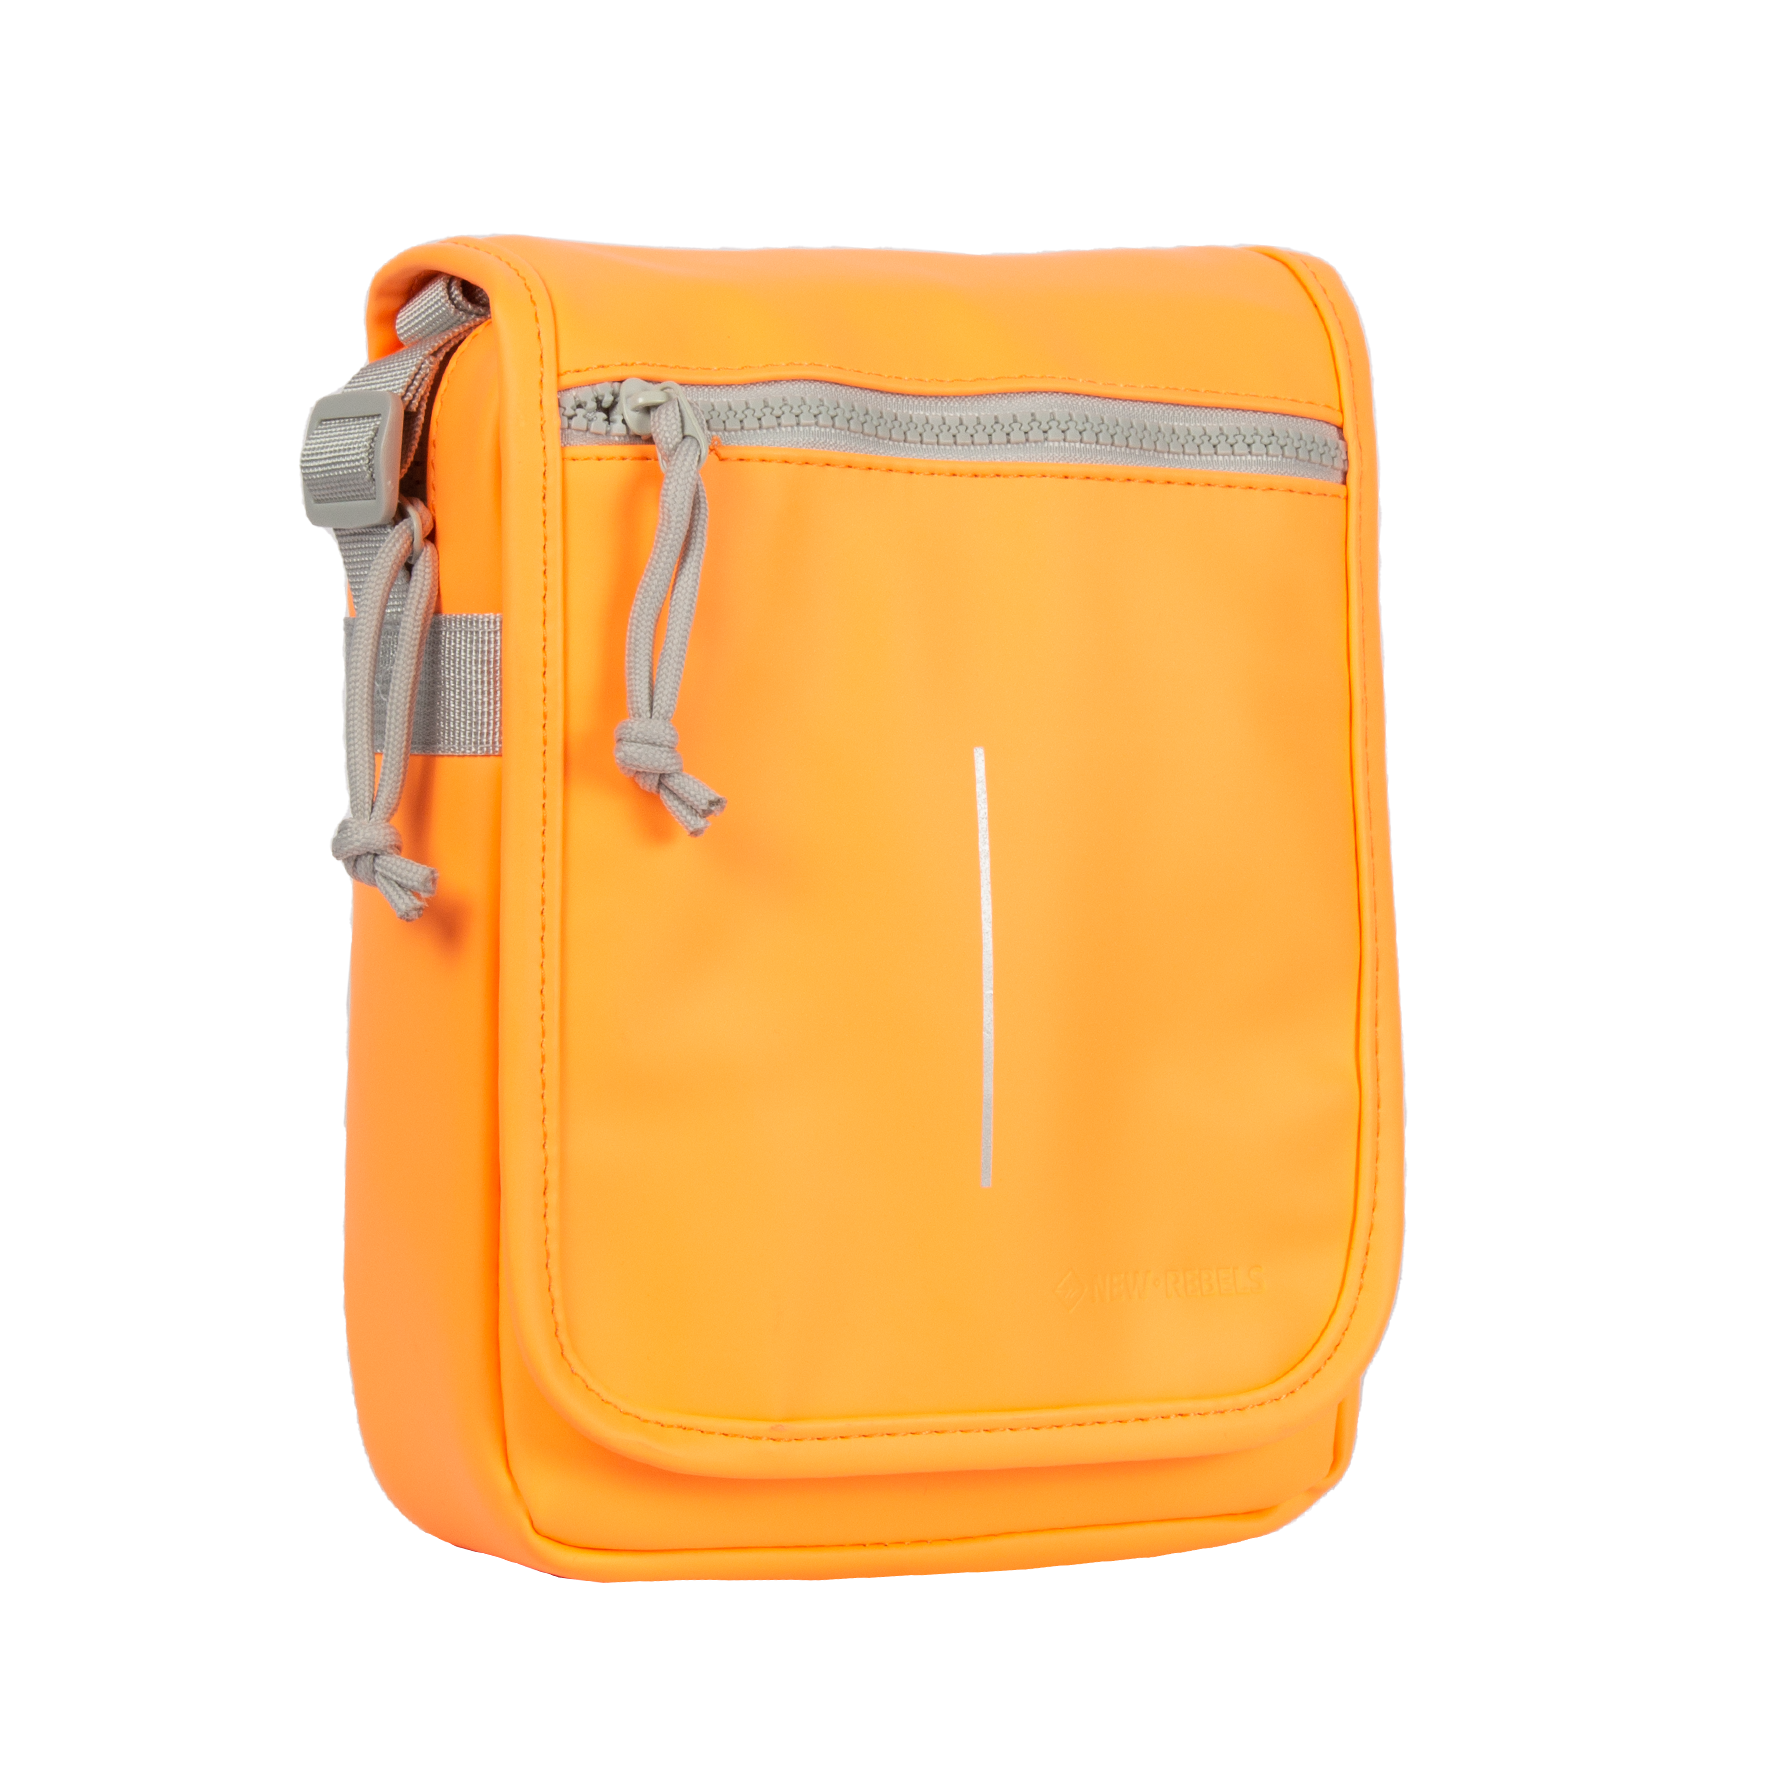 Small Square Bag Neon-Orange Funky Zipper Front Decor